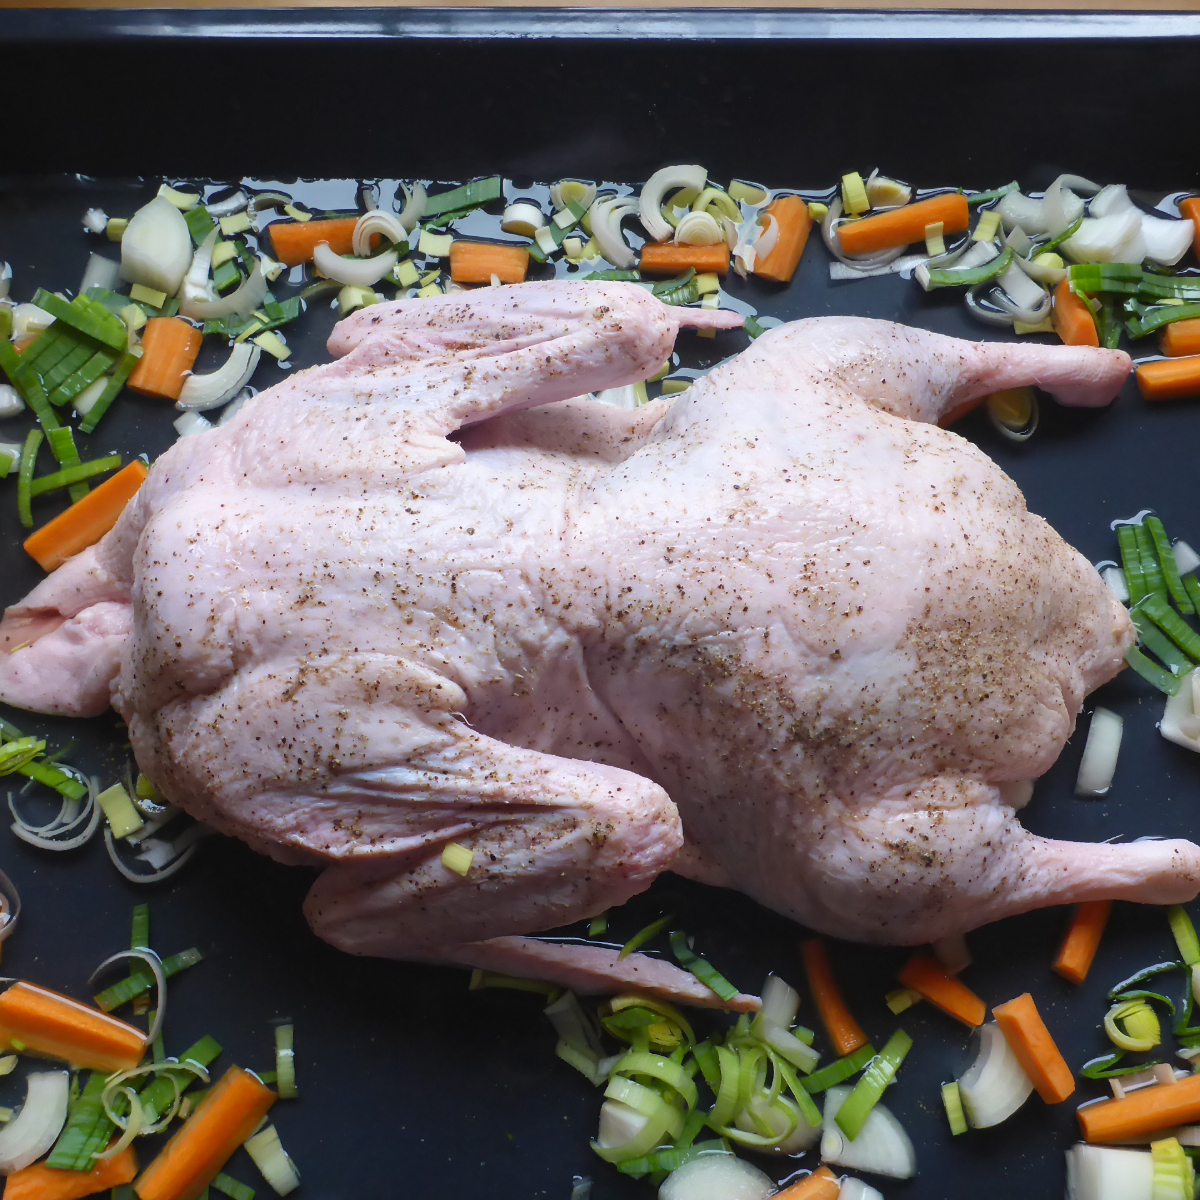 Ein Bild zeigt ein Blech mit einer rohen Ente, umgeben von Möhren und Lauch, bereit zur Zubereitung im Backofen.